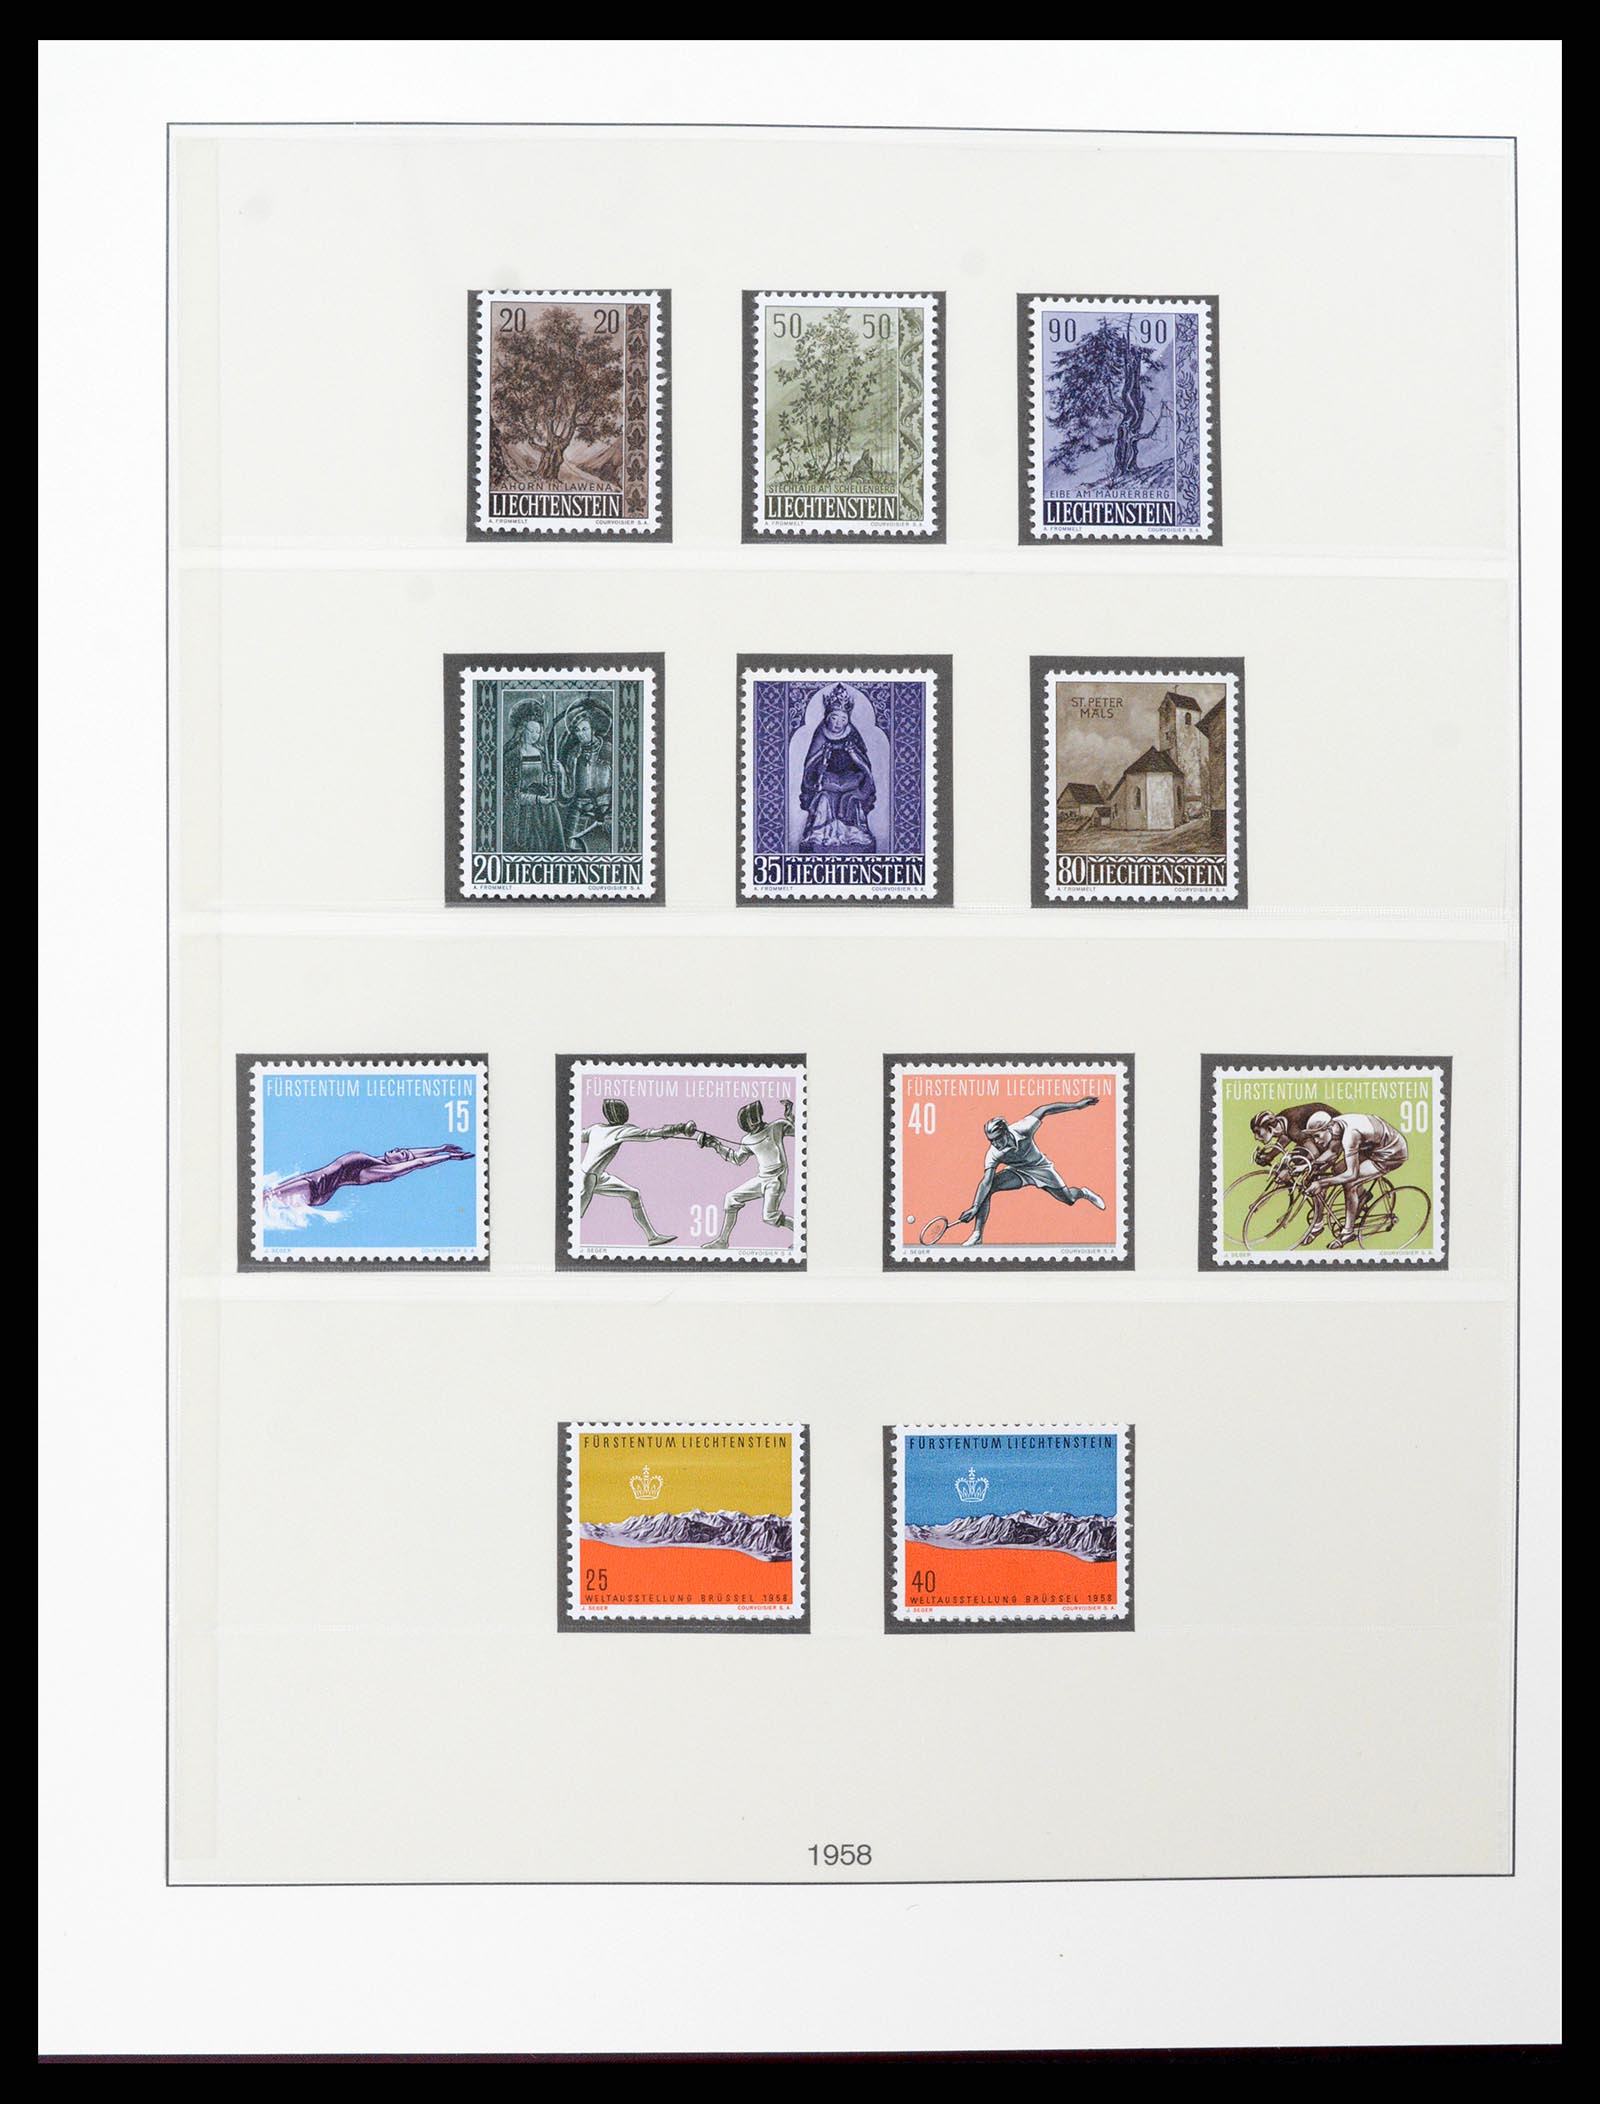 37293 032 - Stamp collection 37293 Liechtenstein 1912-2003.